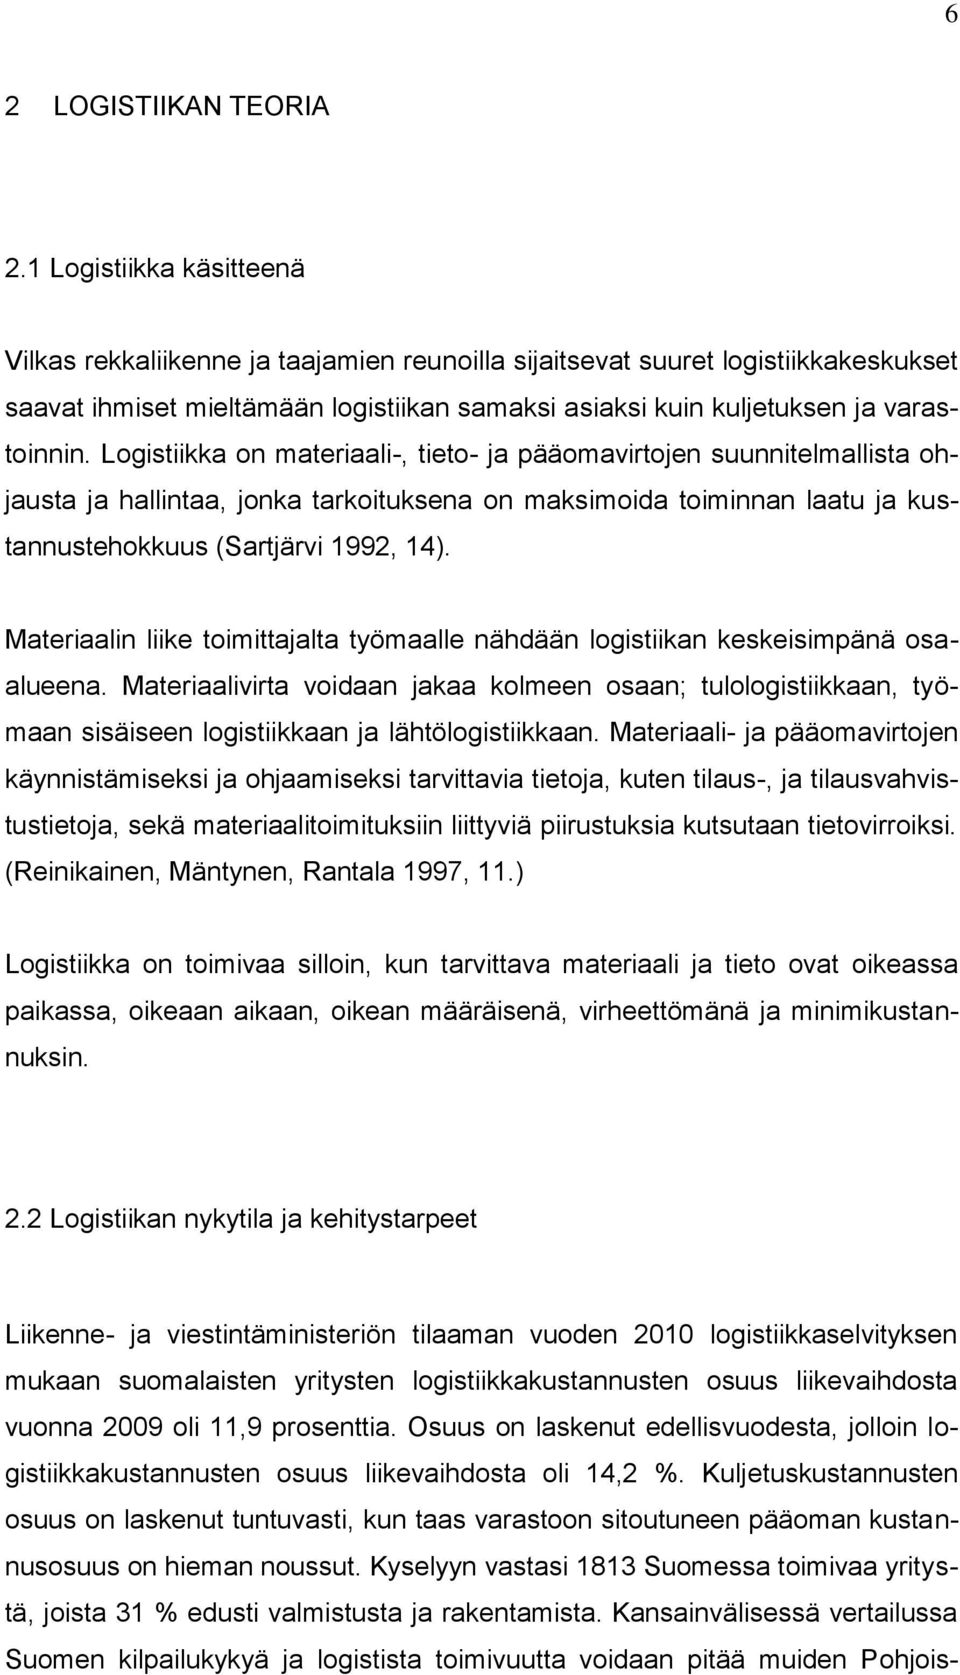 Logistiikka on materiaali-, tieto- ja pääomavirtojen suunnitelmallista ohjausta ja hallintaa, jonka tarkoituksena on maksimoida toiminnan laatu ja kustannustehokkuus (Sartjärvi 1992, 14).